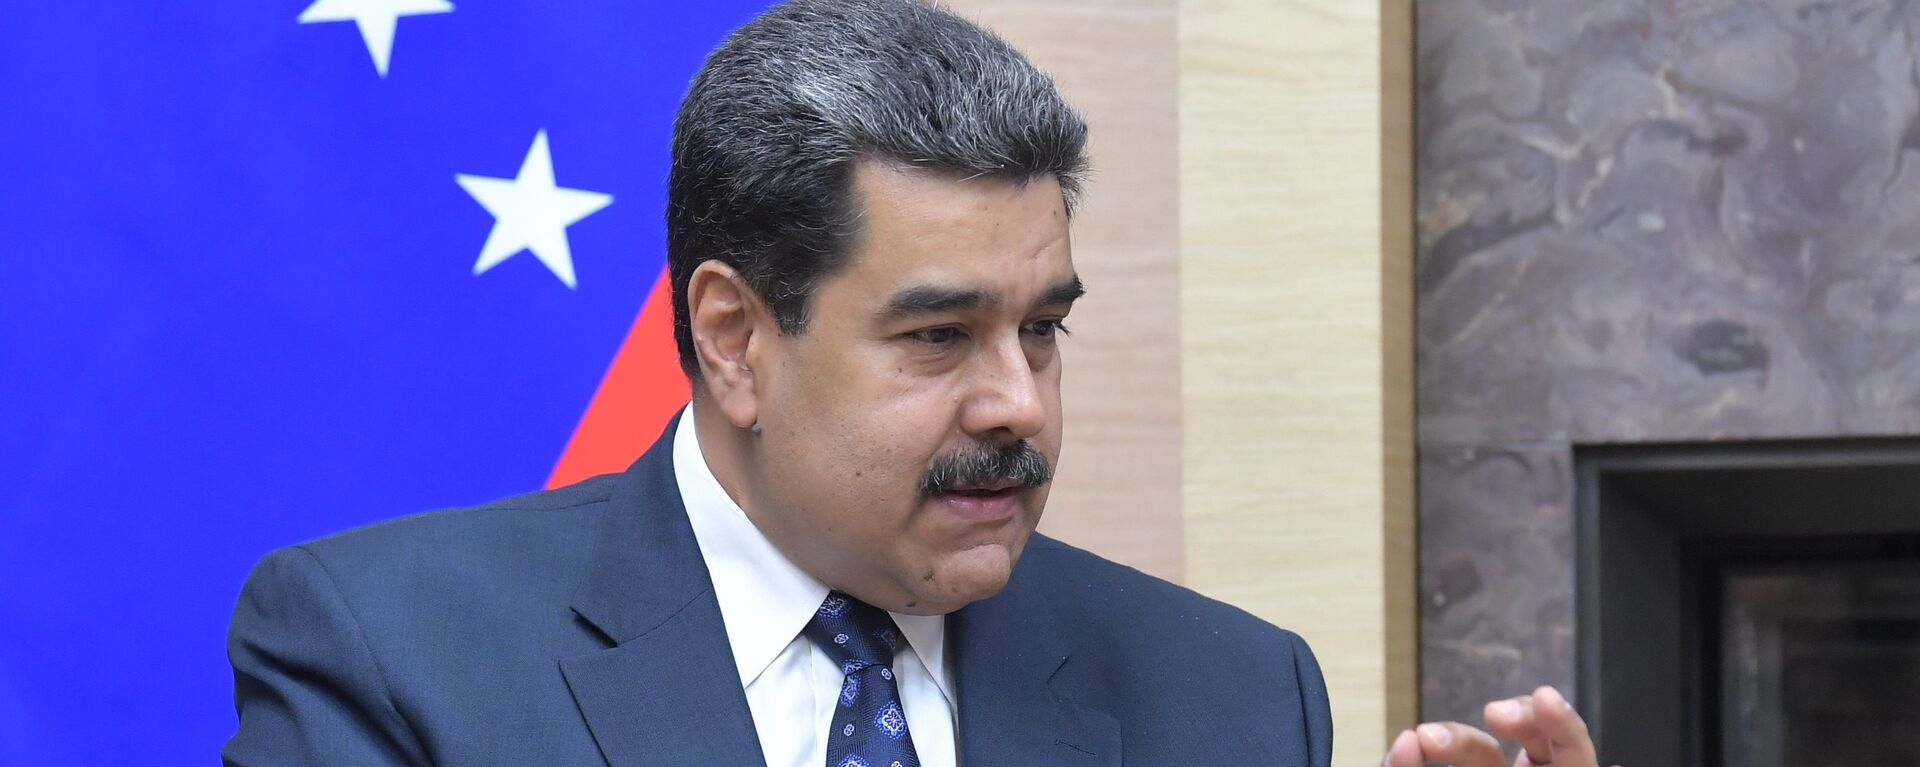 Nicolás Maduro, presidente de Venezuela - Sputnik Mundo, 1920, 17.02.2021